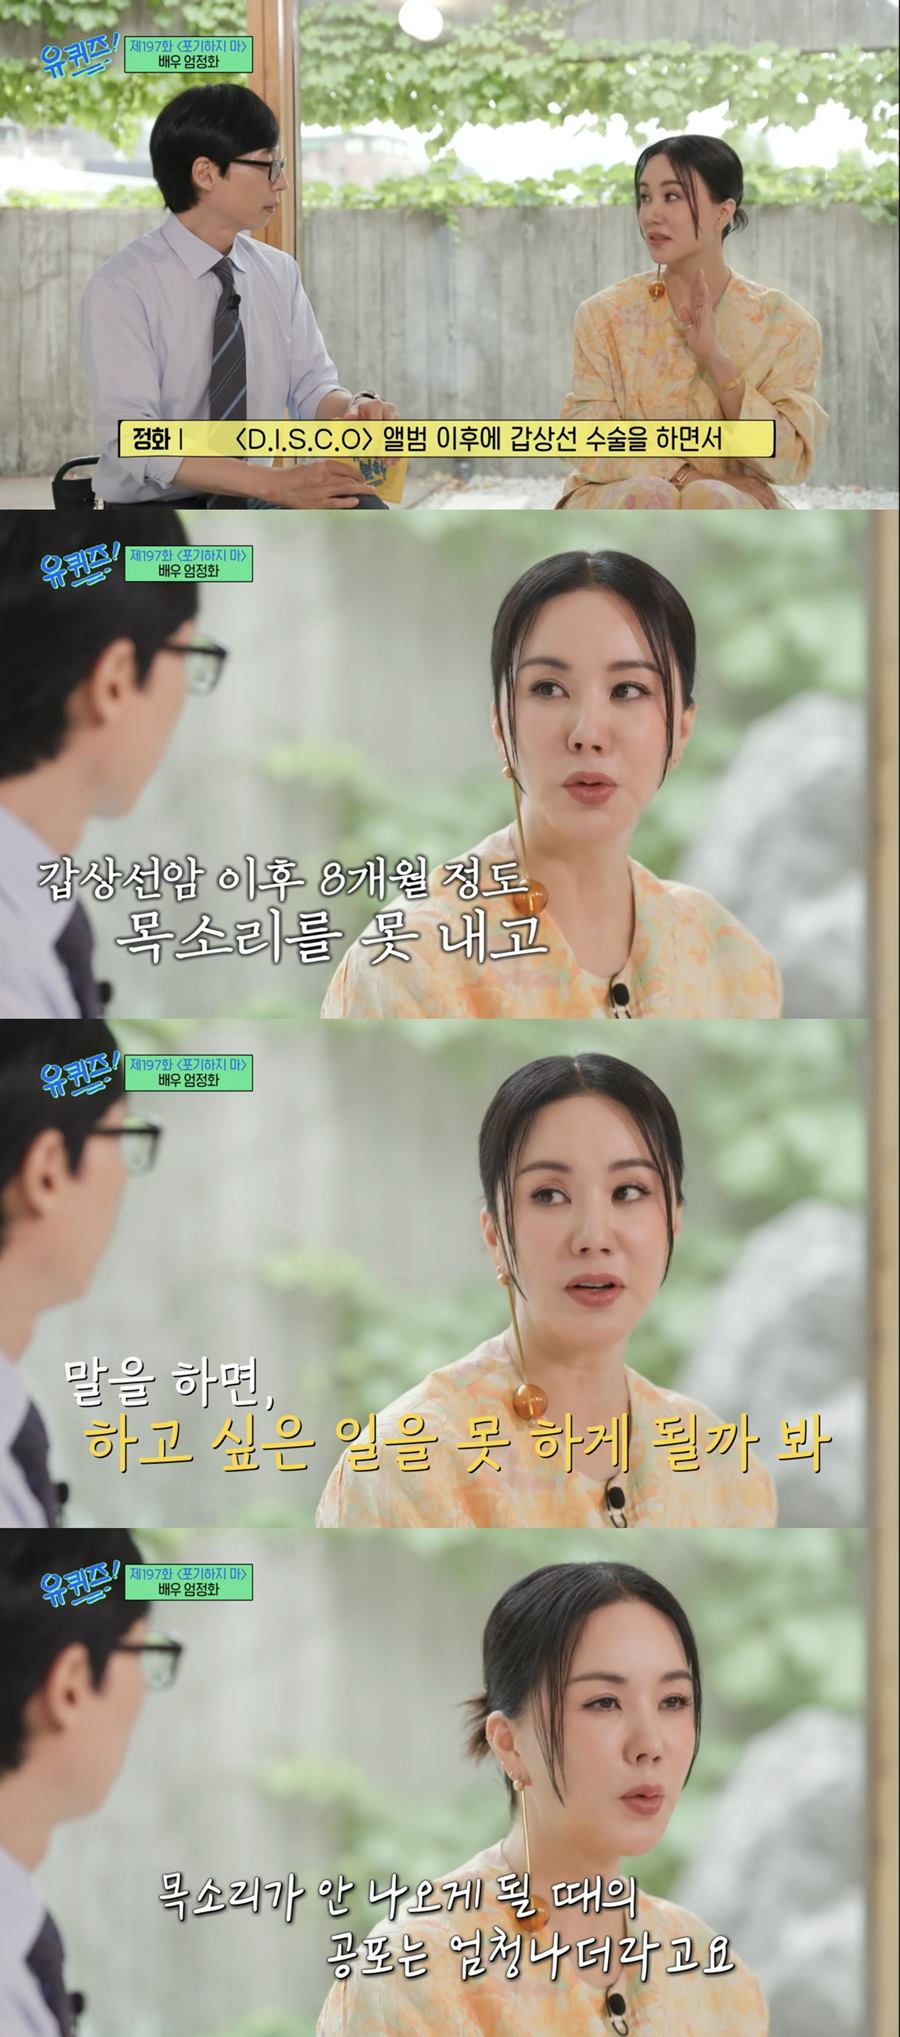 ▲ tvN 예능 프로그램 '유퀴즈'. 출처| '유퀴즈' 방송화면 캡처